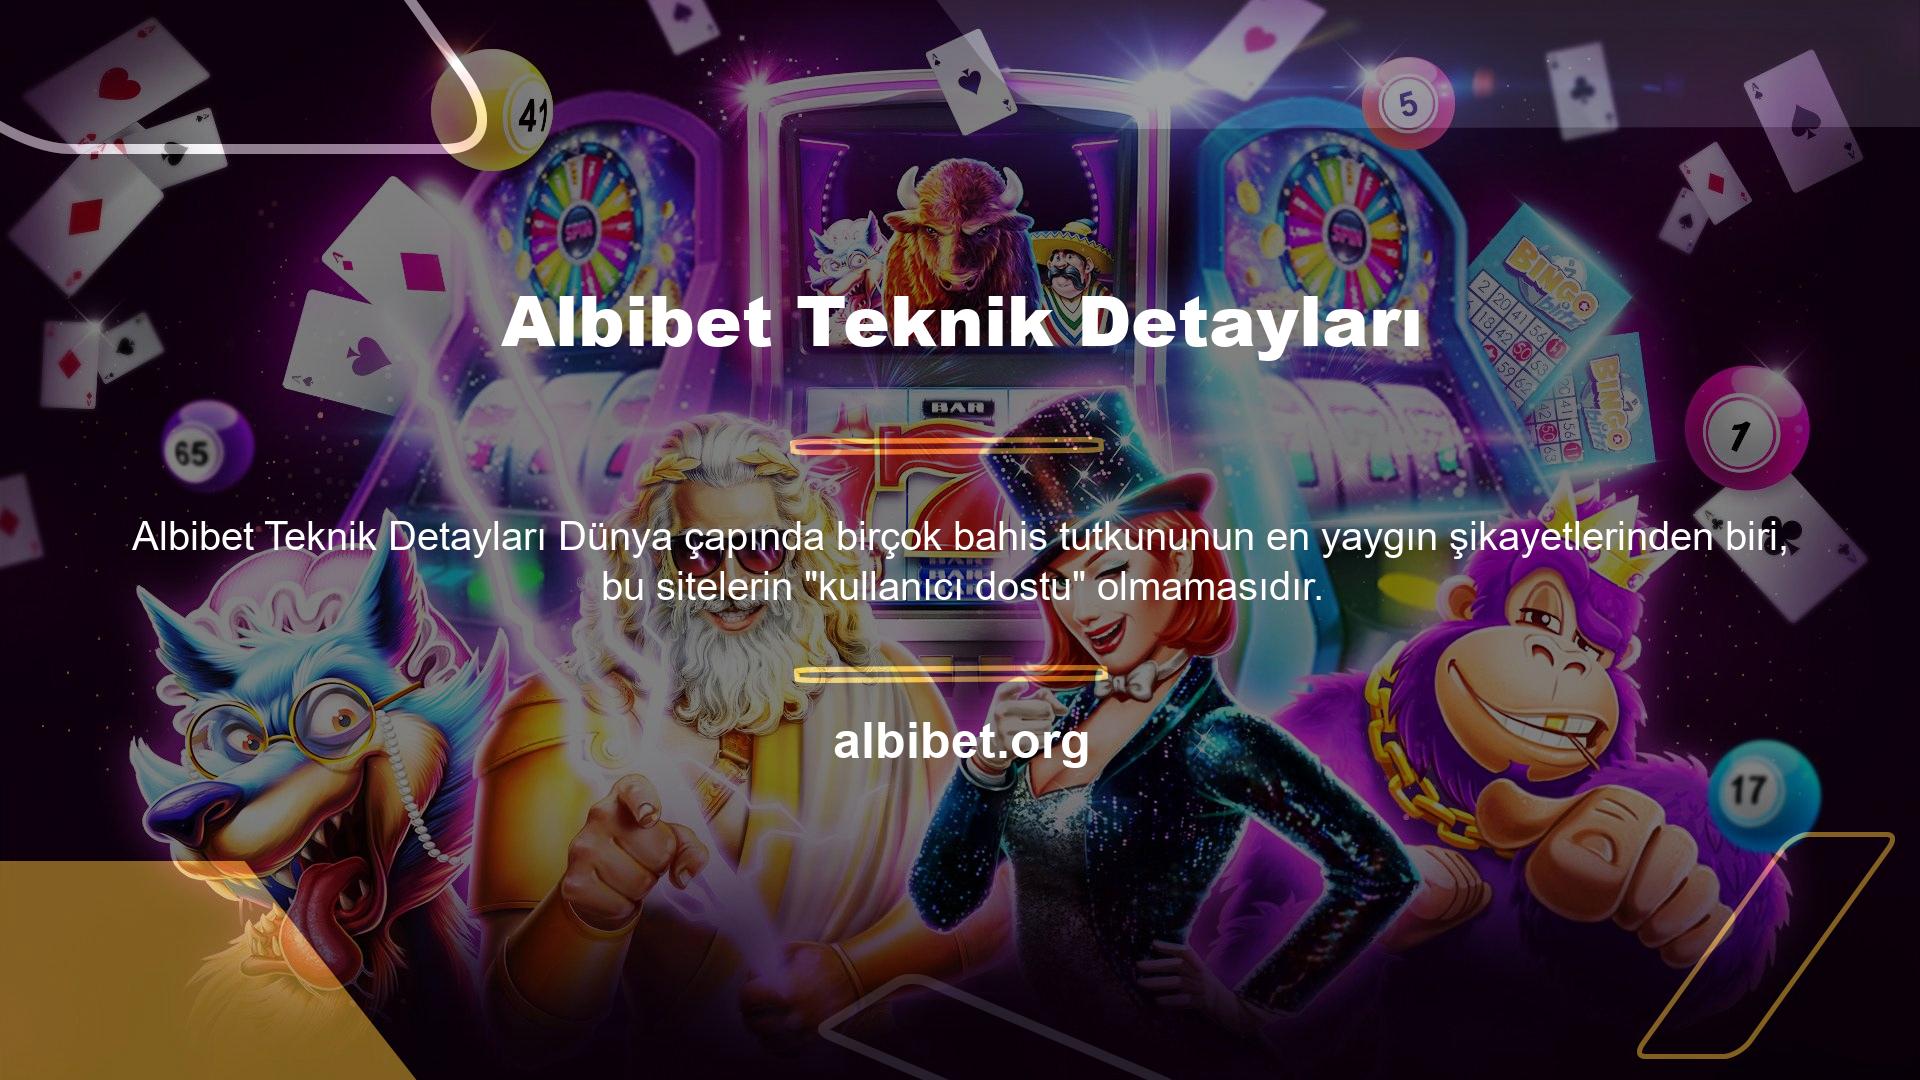 Menü ve altyazılara erişim karmaşıkken, oyuna erişim zahmetli, Albibet web sitesine bağlantı hızı vb